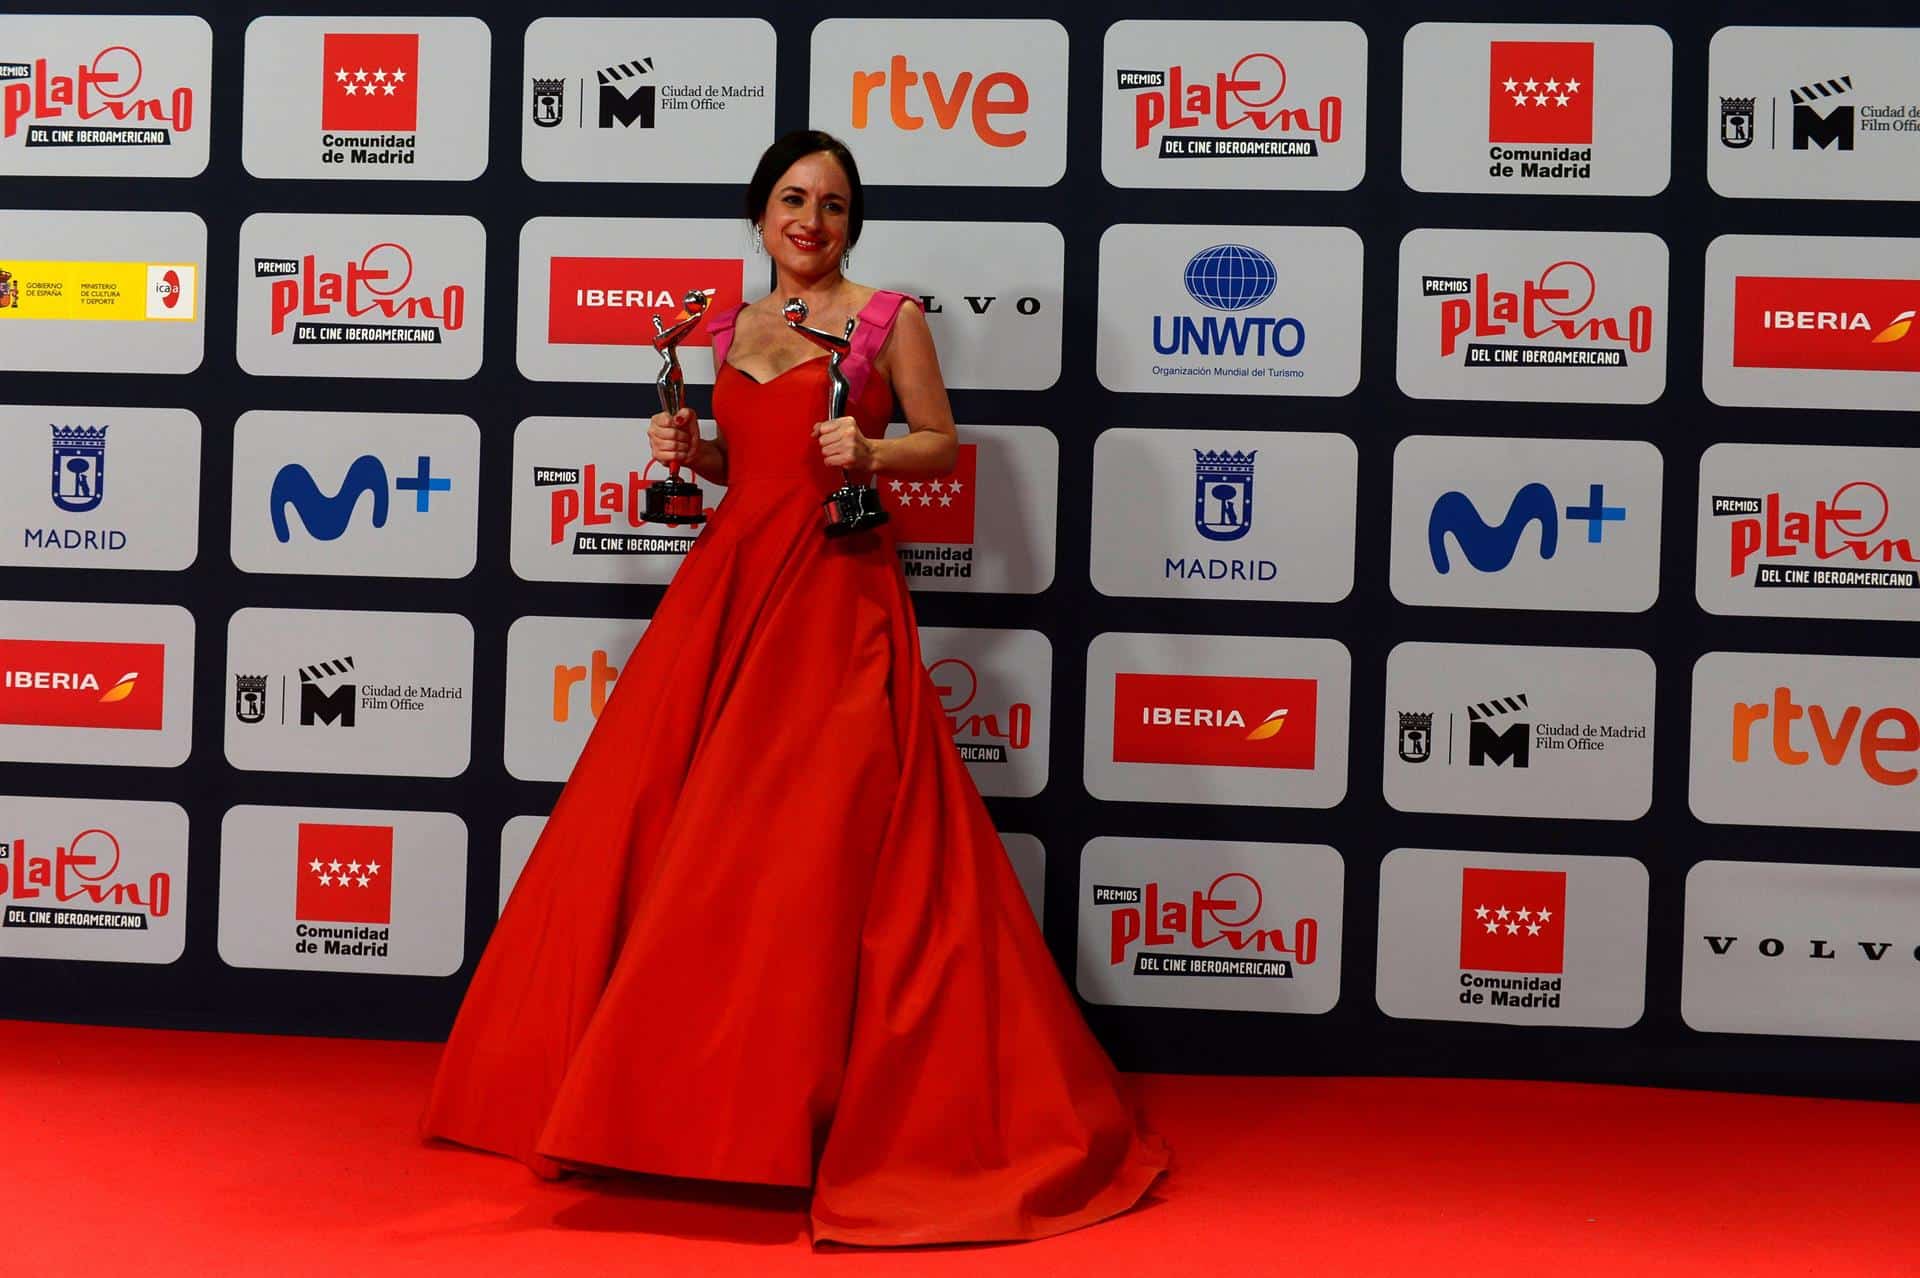 La directora chilena Maite Alberdi posa con sus dos premios por "El agente topo", durante la ceremonia de entrega de los Premios Platino del Cine y el Audiovisual Iberoamericano que se celebra este domingo en Madrid